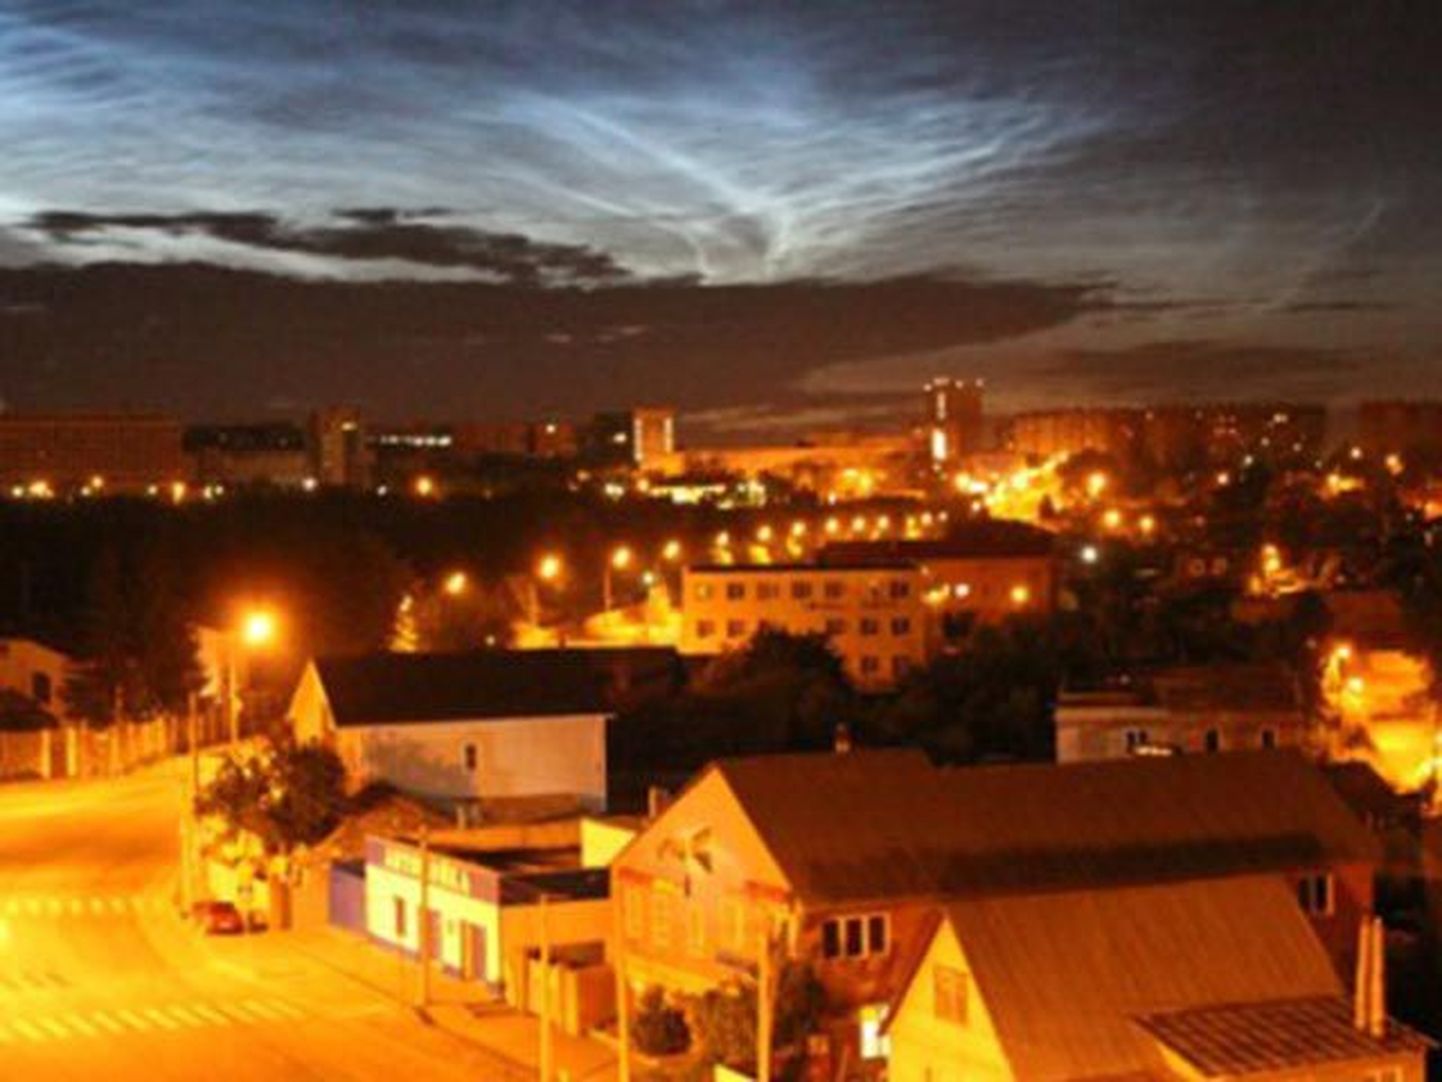 В небе над Челябинском минувшей ночью наблюдалось необычное яркое свечение. Город, прославившийся на весь мир падением метеорита, сравнивал происходящее с северным сиянием, хотя его в таких широтах обычно не бывает.